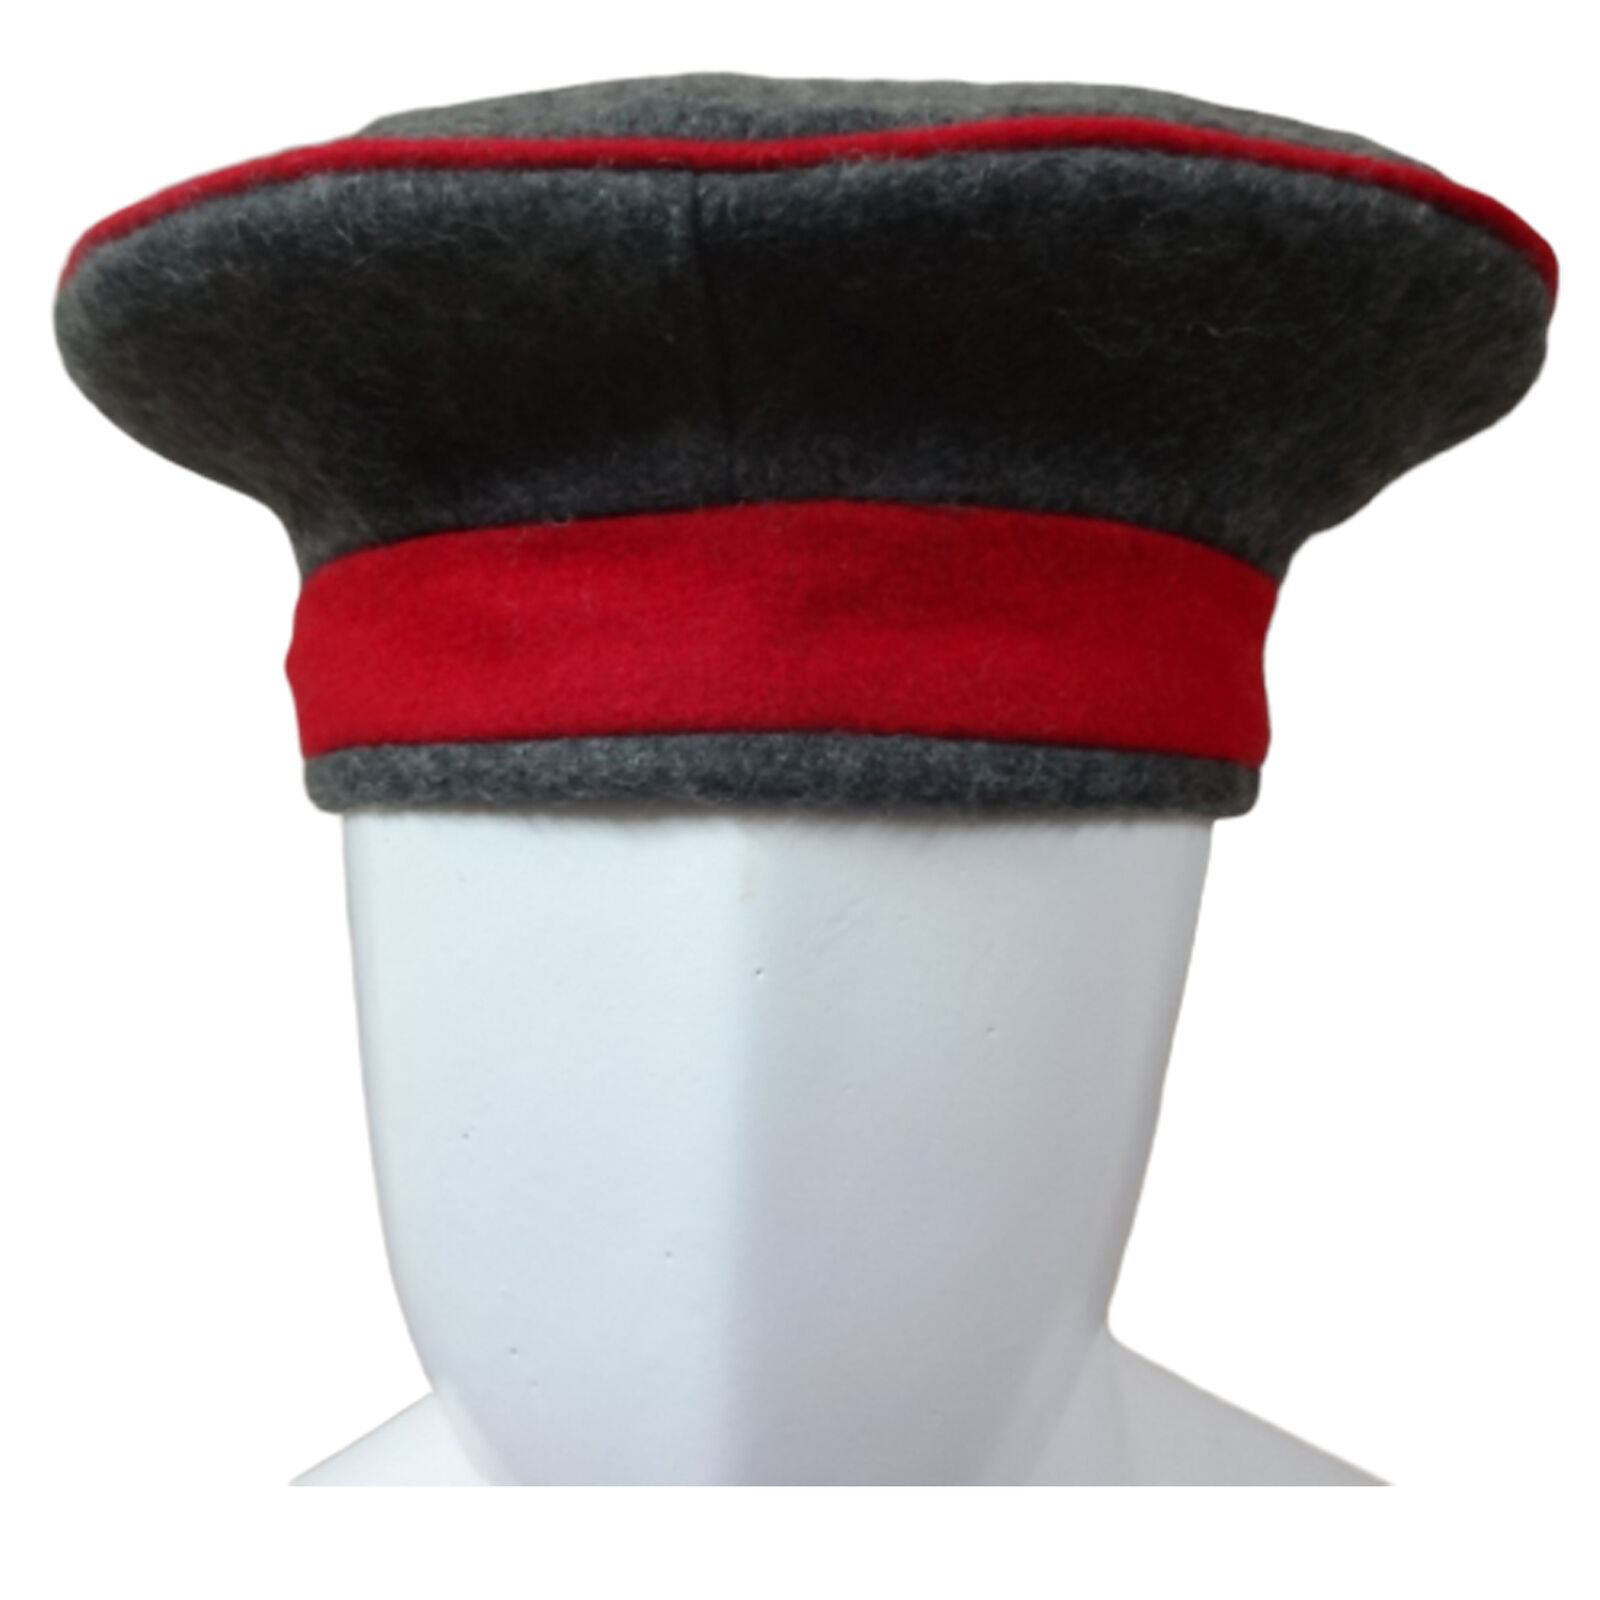 Kratzchen Field Cap M10/Monarchy Empire Uniform Cap Size 60cm (US Size 7.50) b49